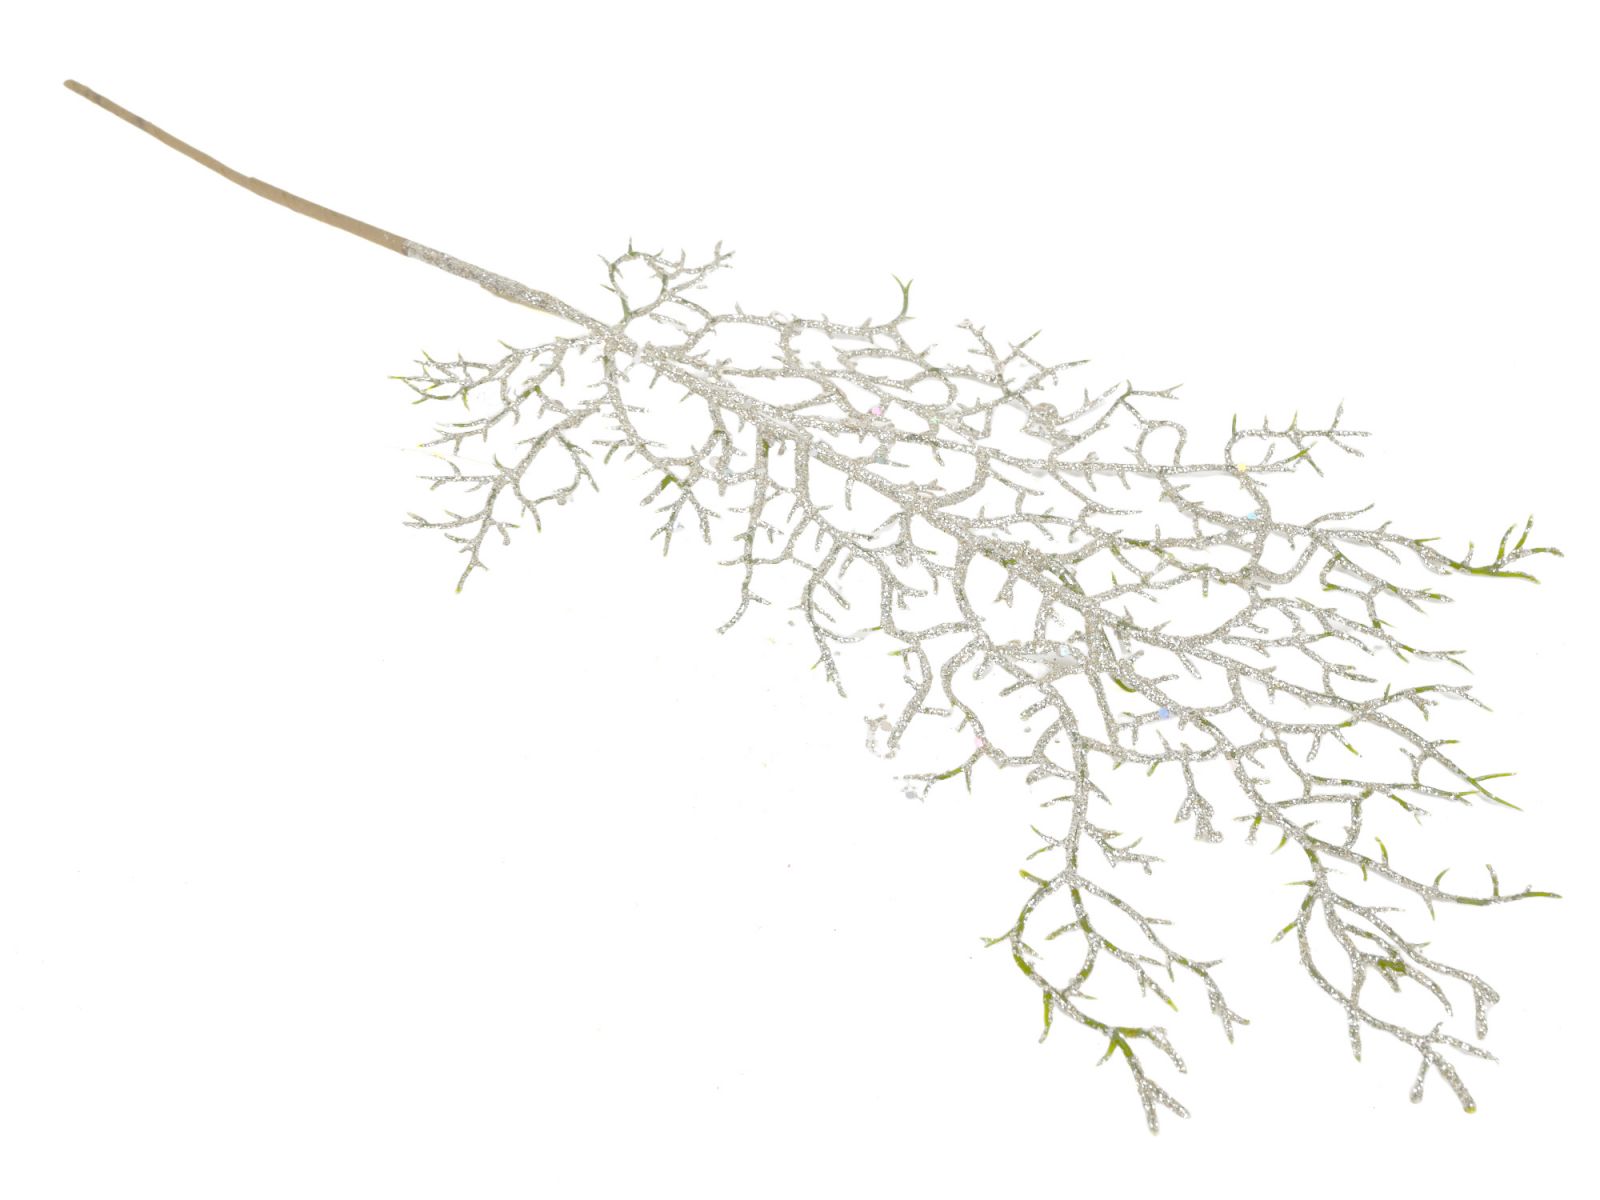 Větev drátovec - umělá květina